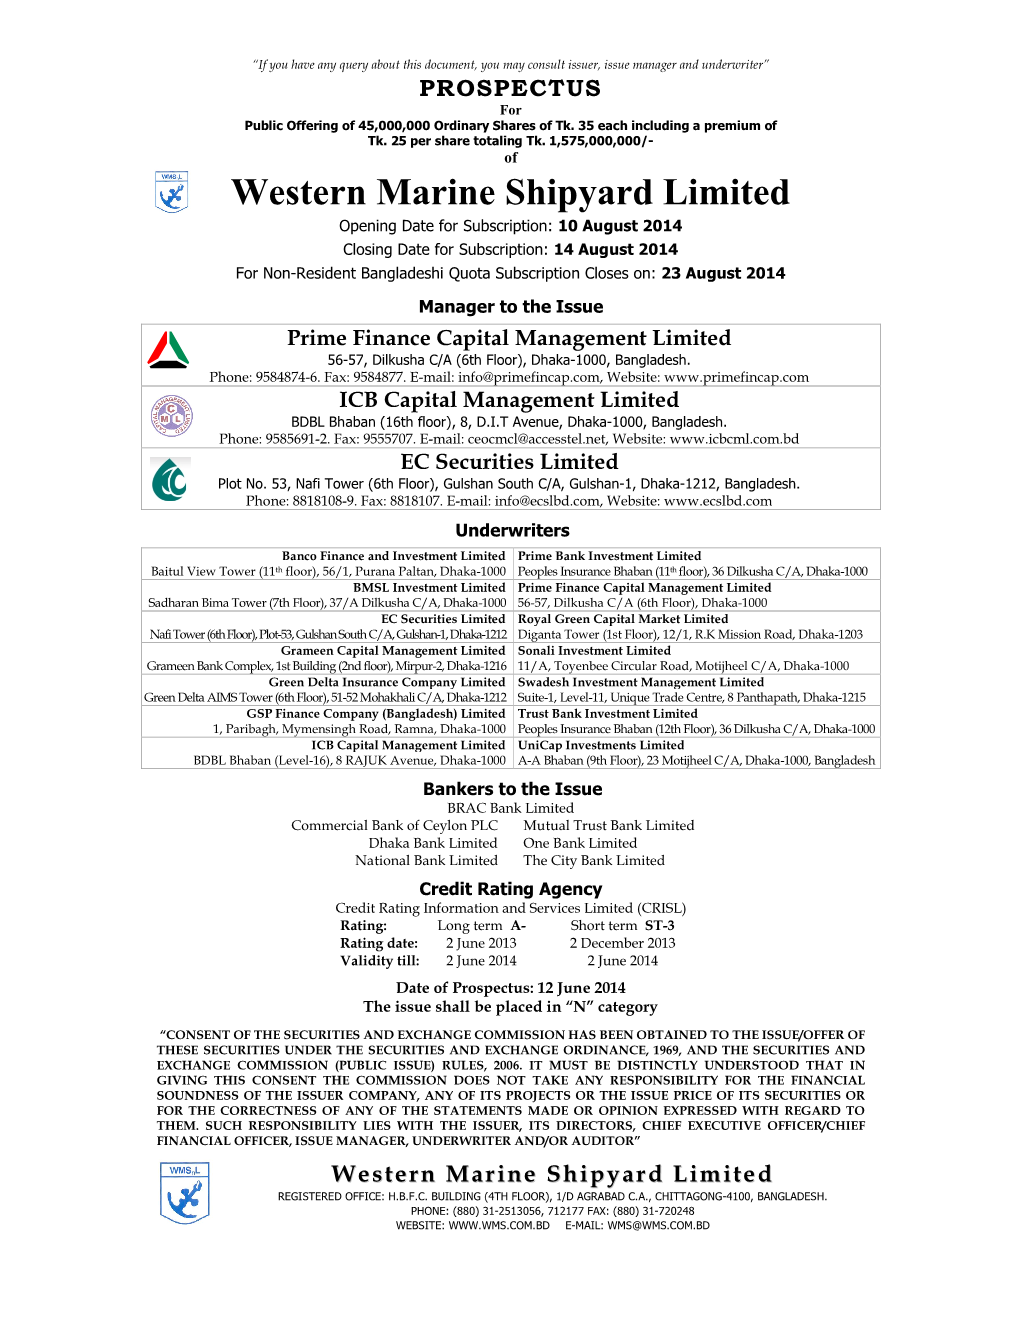 Western Marine Shipyard Limited